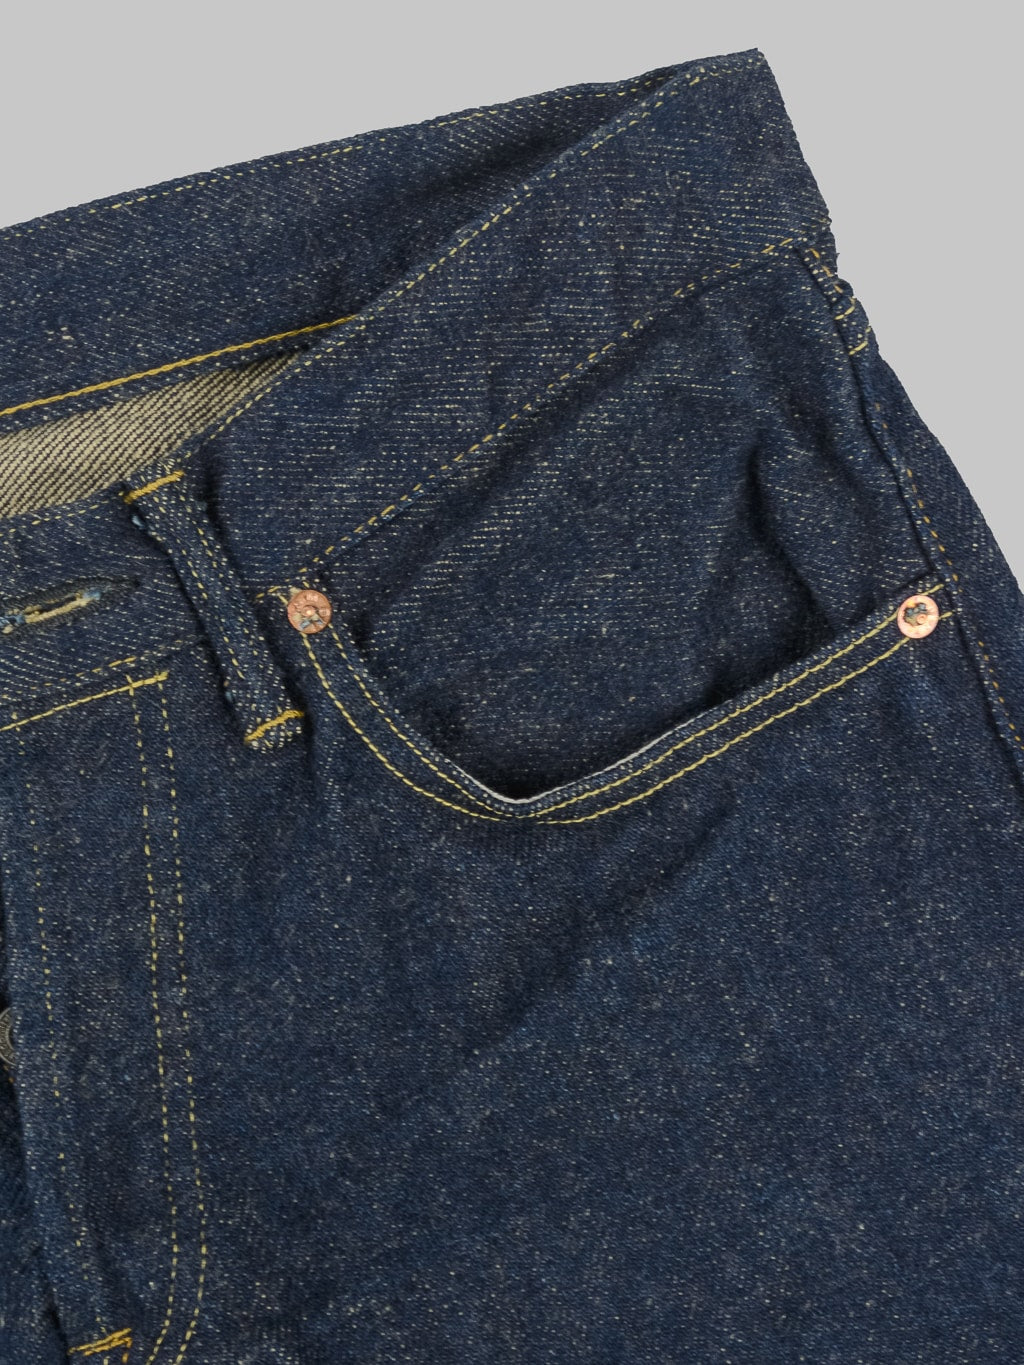 ONI Denim 544ZR Secret Denim Stylish Tapered Jeans seams